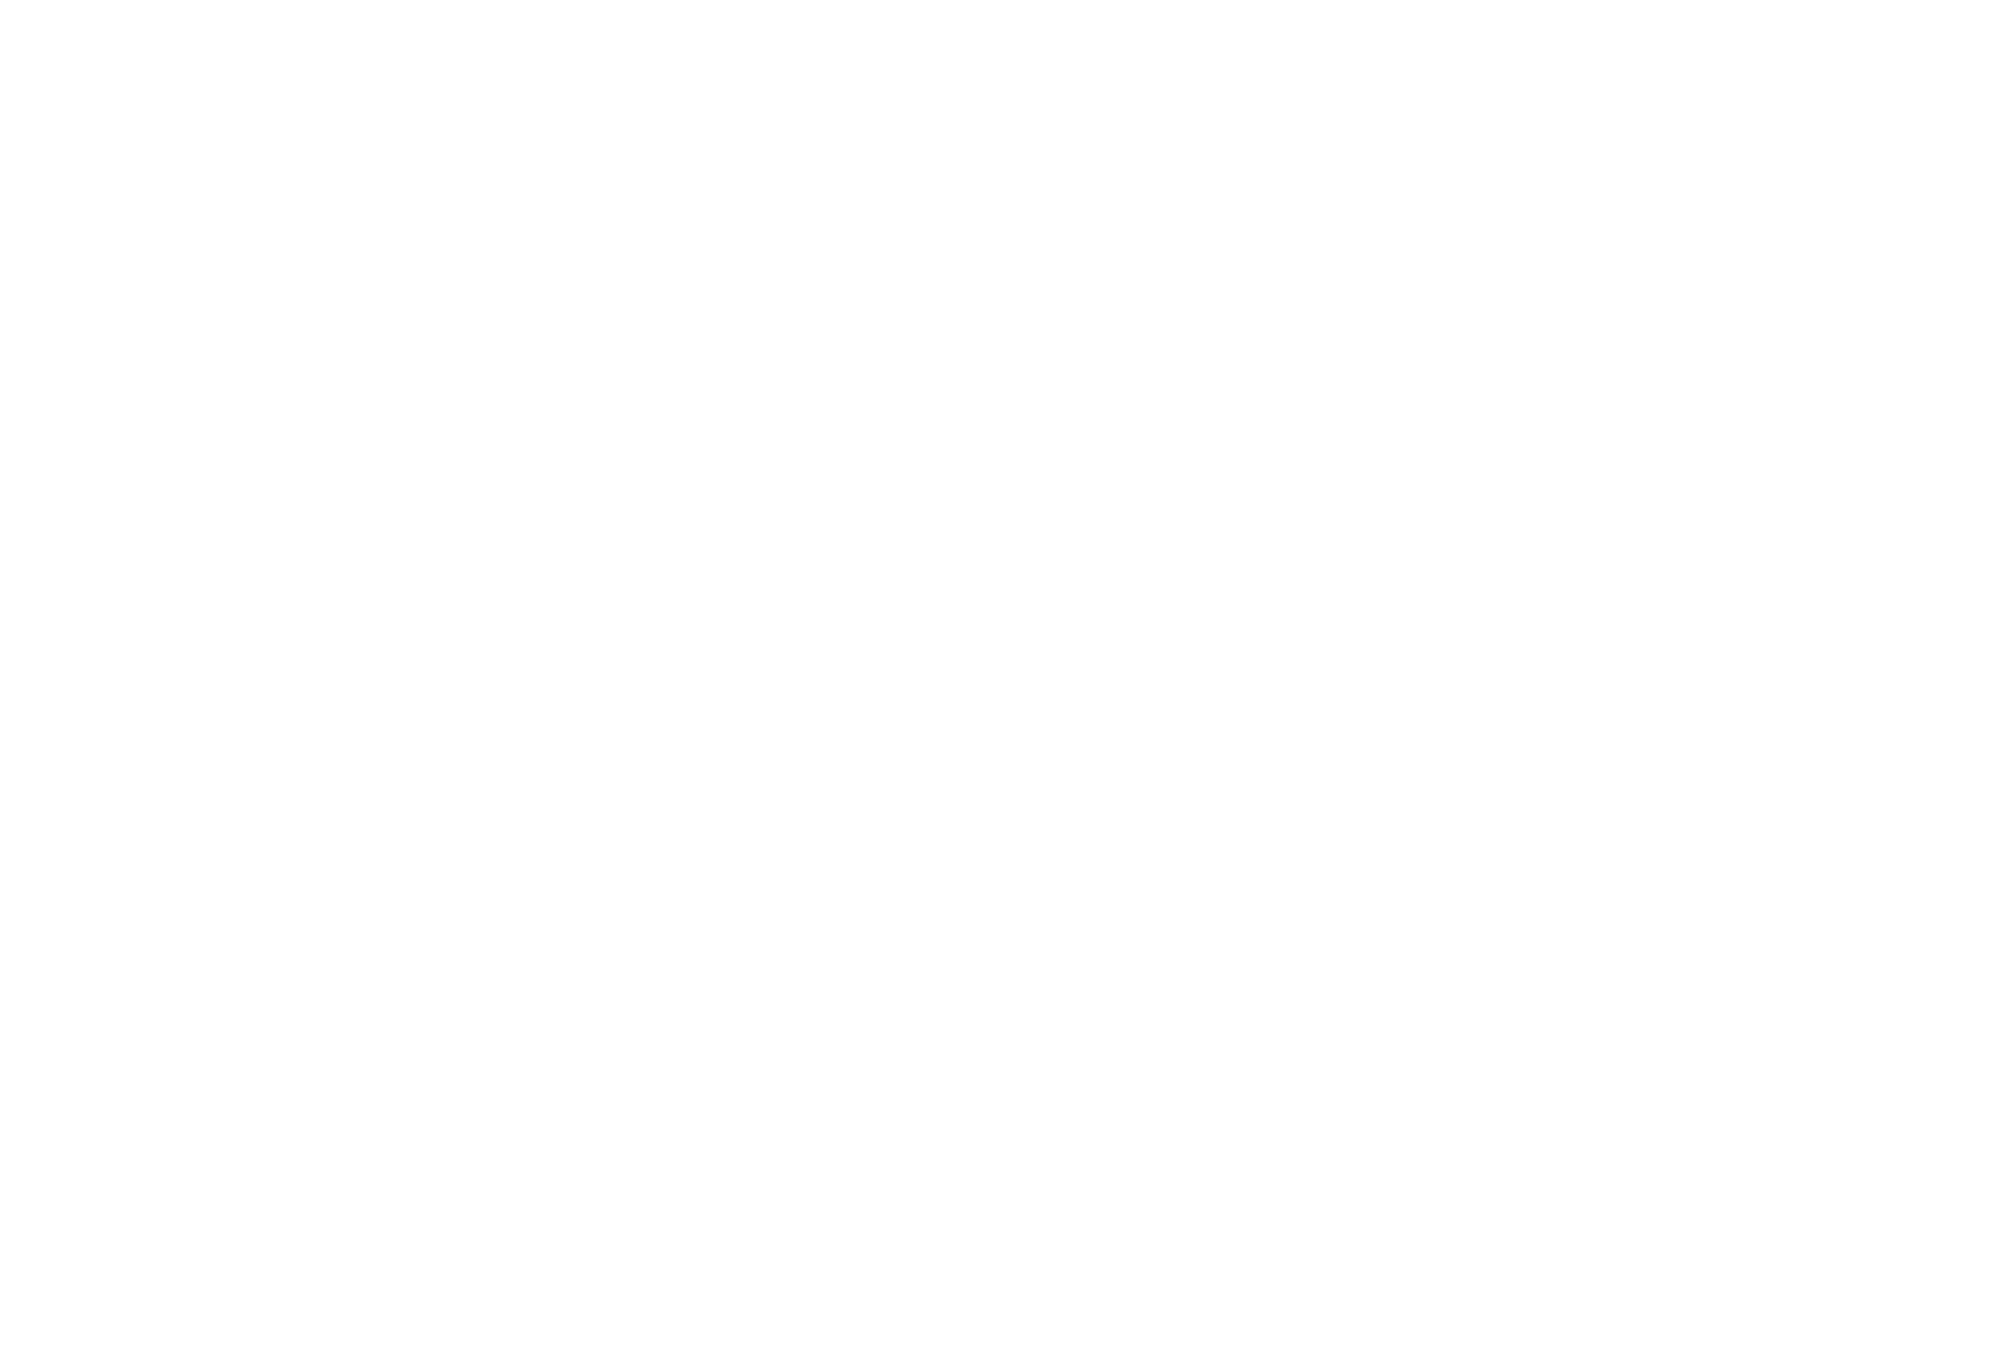 Ford O'Brien Landy LLP